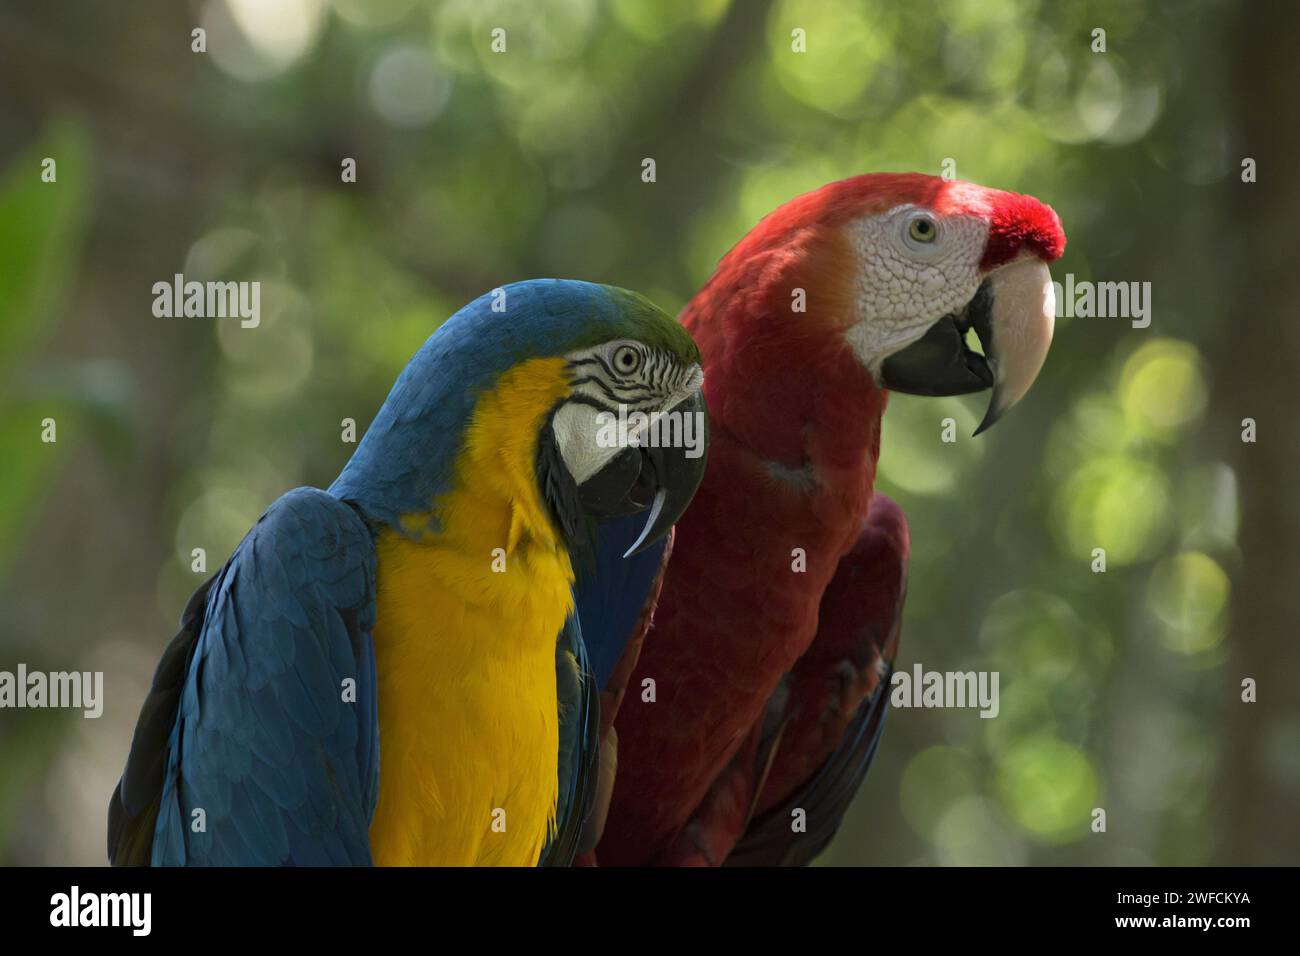 Canindé macaw e pappagallo rosso più grandi nel Parco degli uccelli - canindé di macaw chiamato anche canindé giallo con abbellimento di macaw, e macaw giallo ara-Arauna locale: Foz do Foto Stock